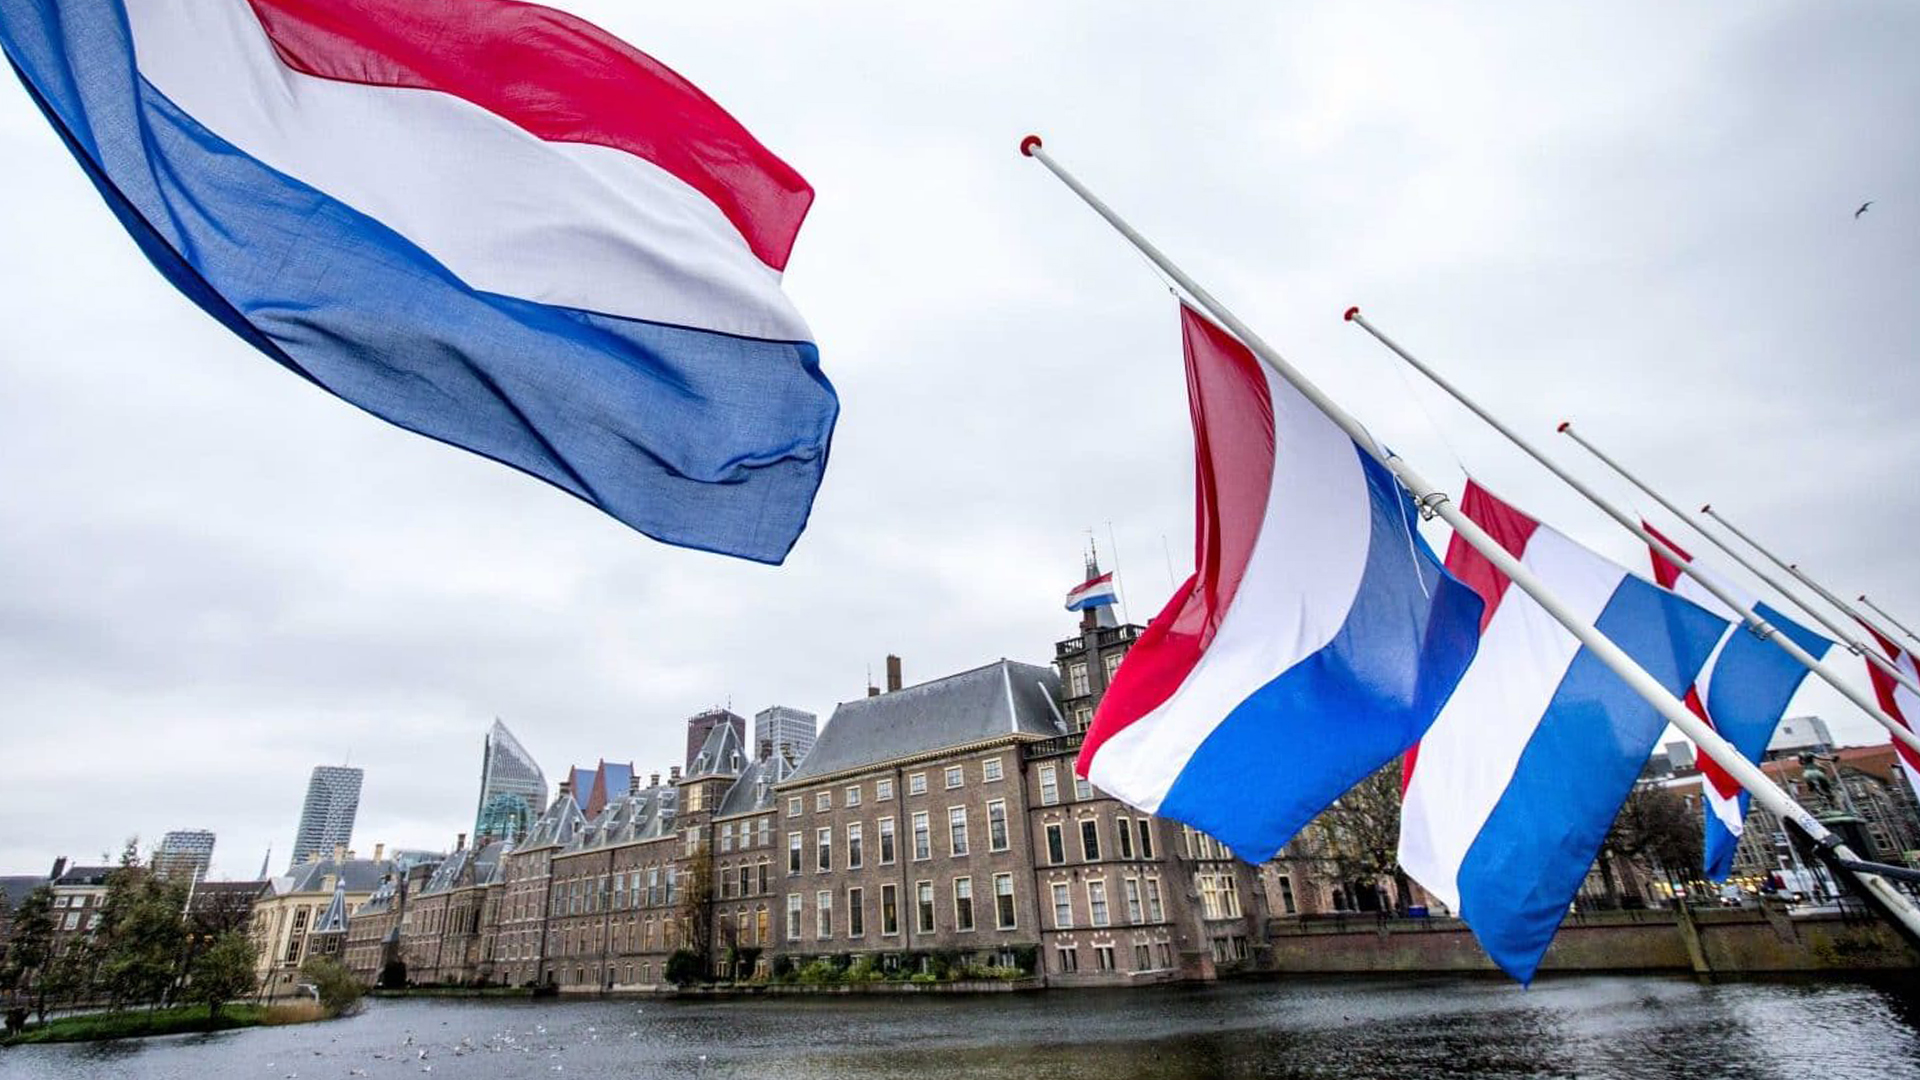 Holanda heq shumicën e masave kufizuese